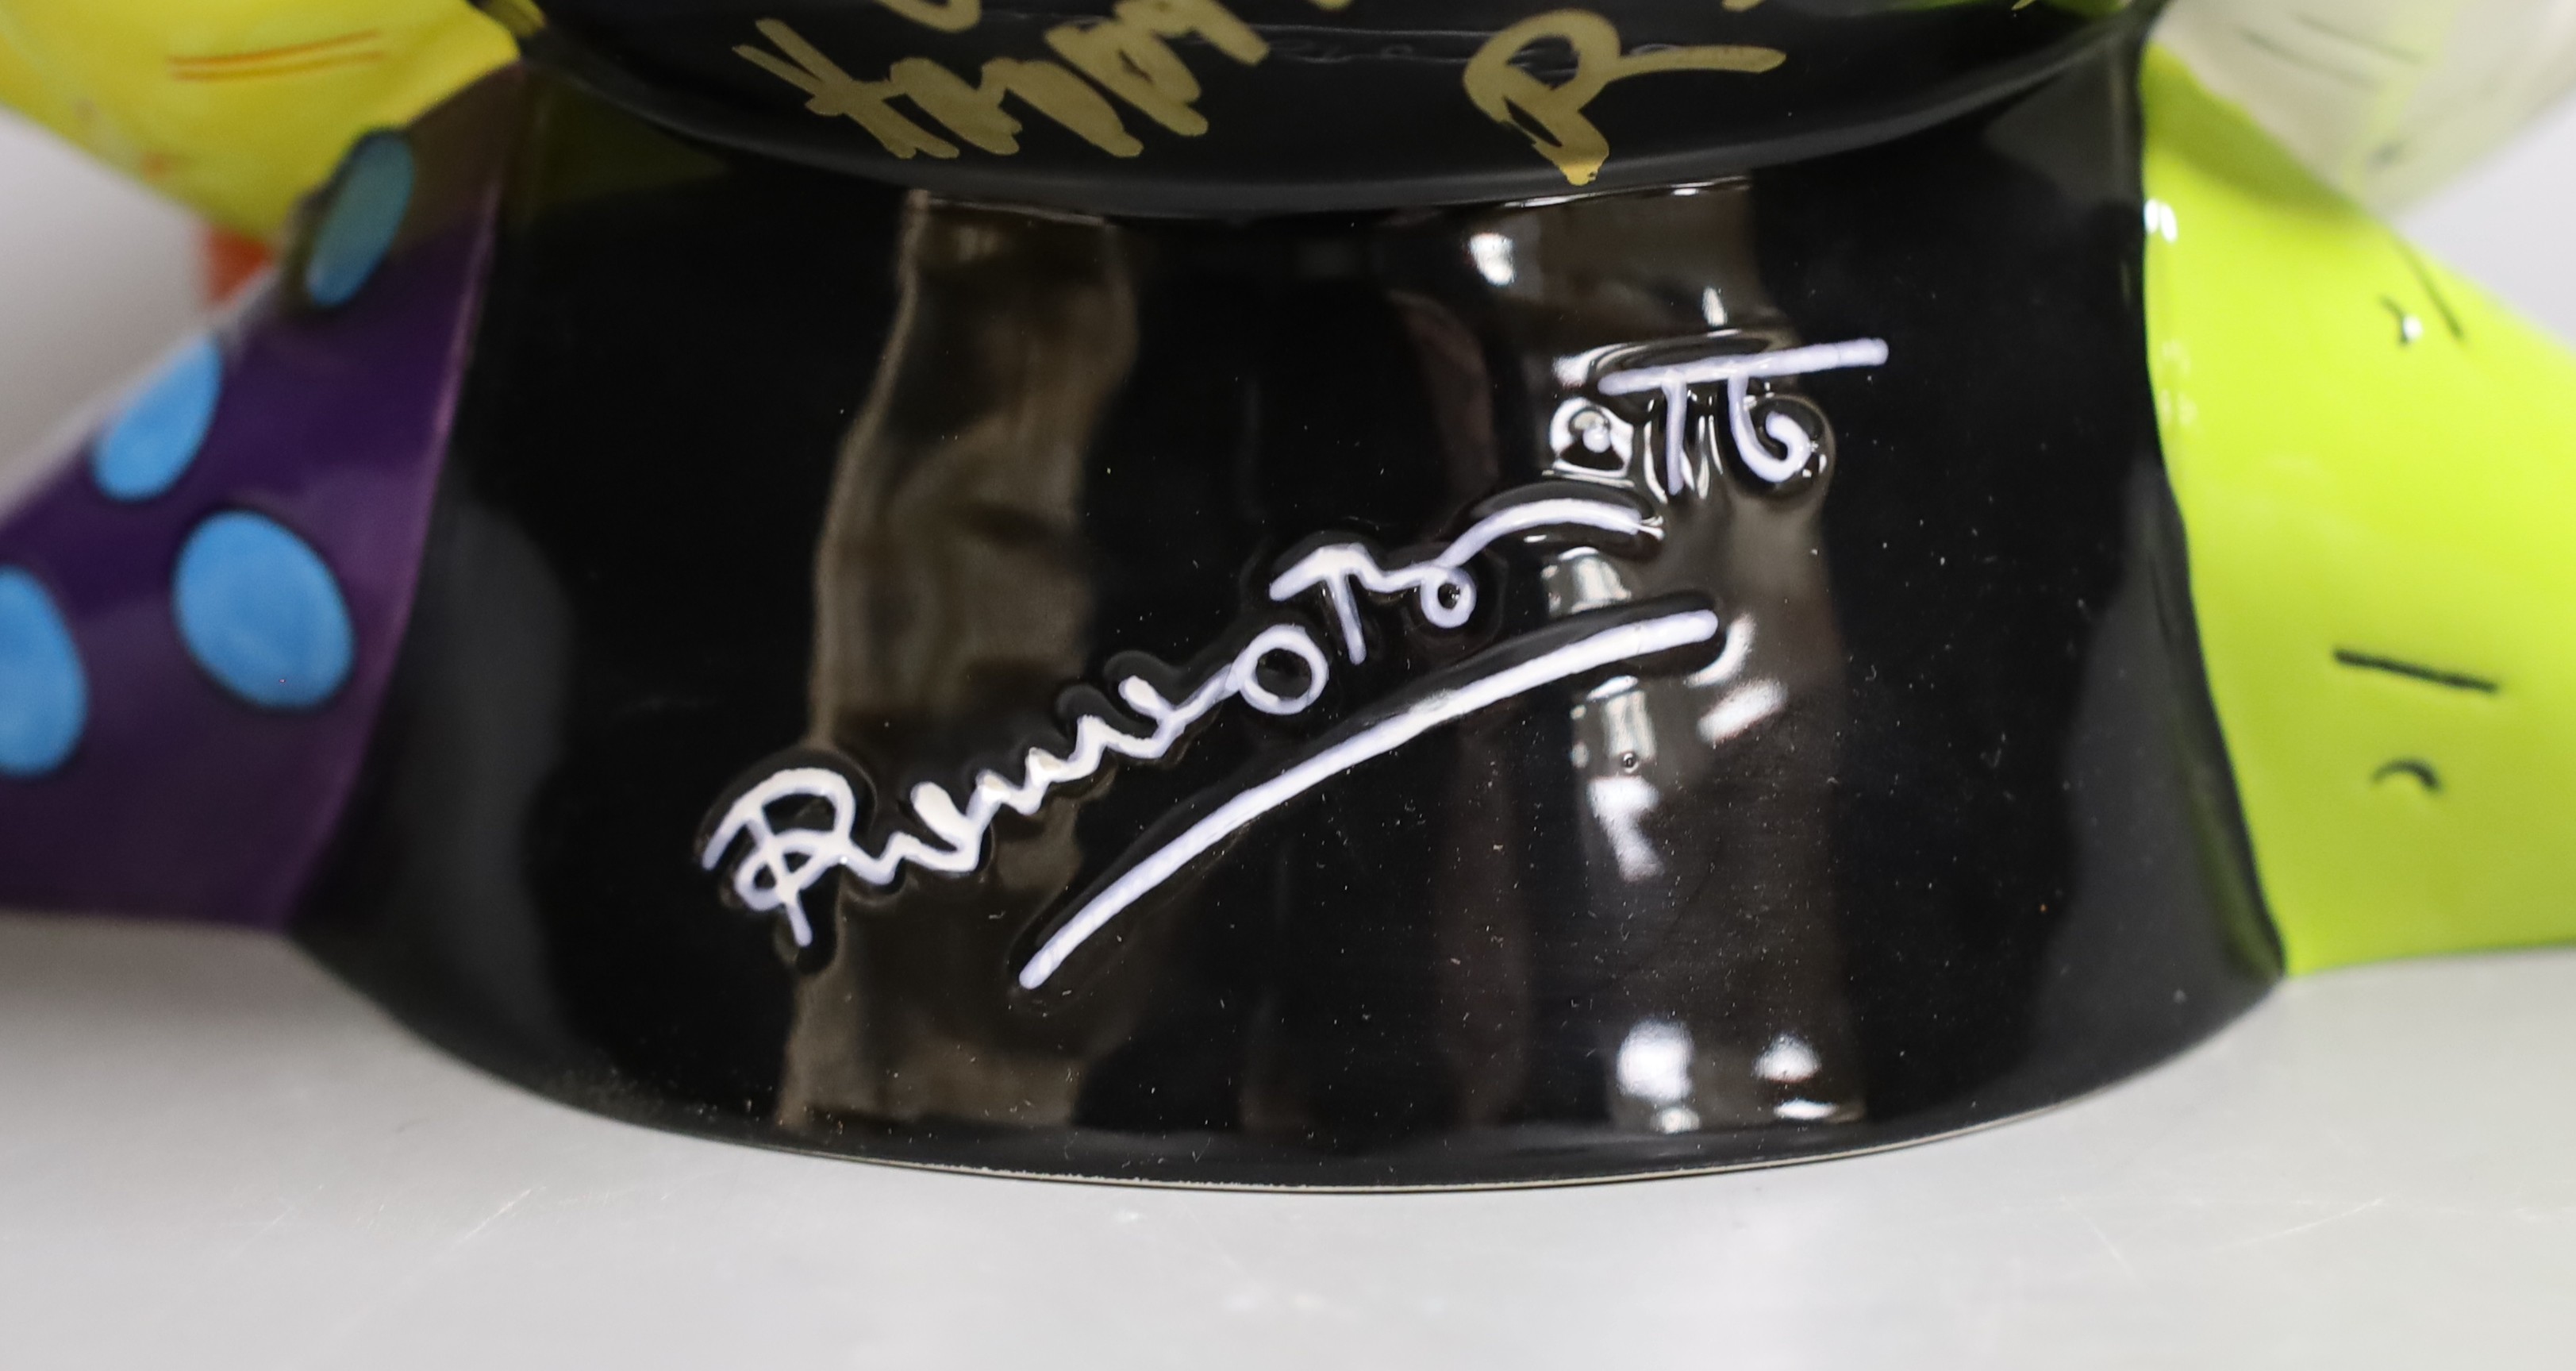 Romero Britto (Brazilian, 1963-), a ceramic Mickey Mouse cookie jar